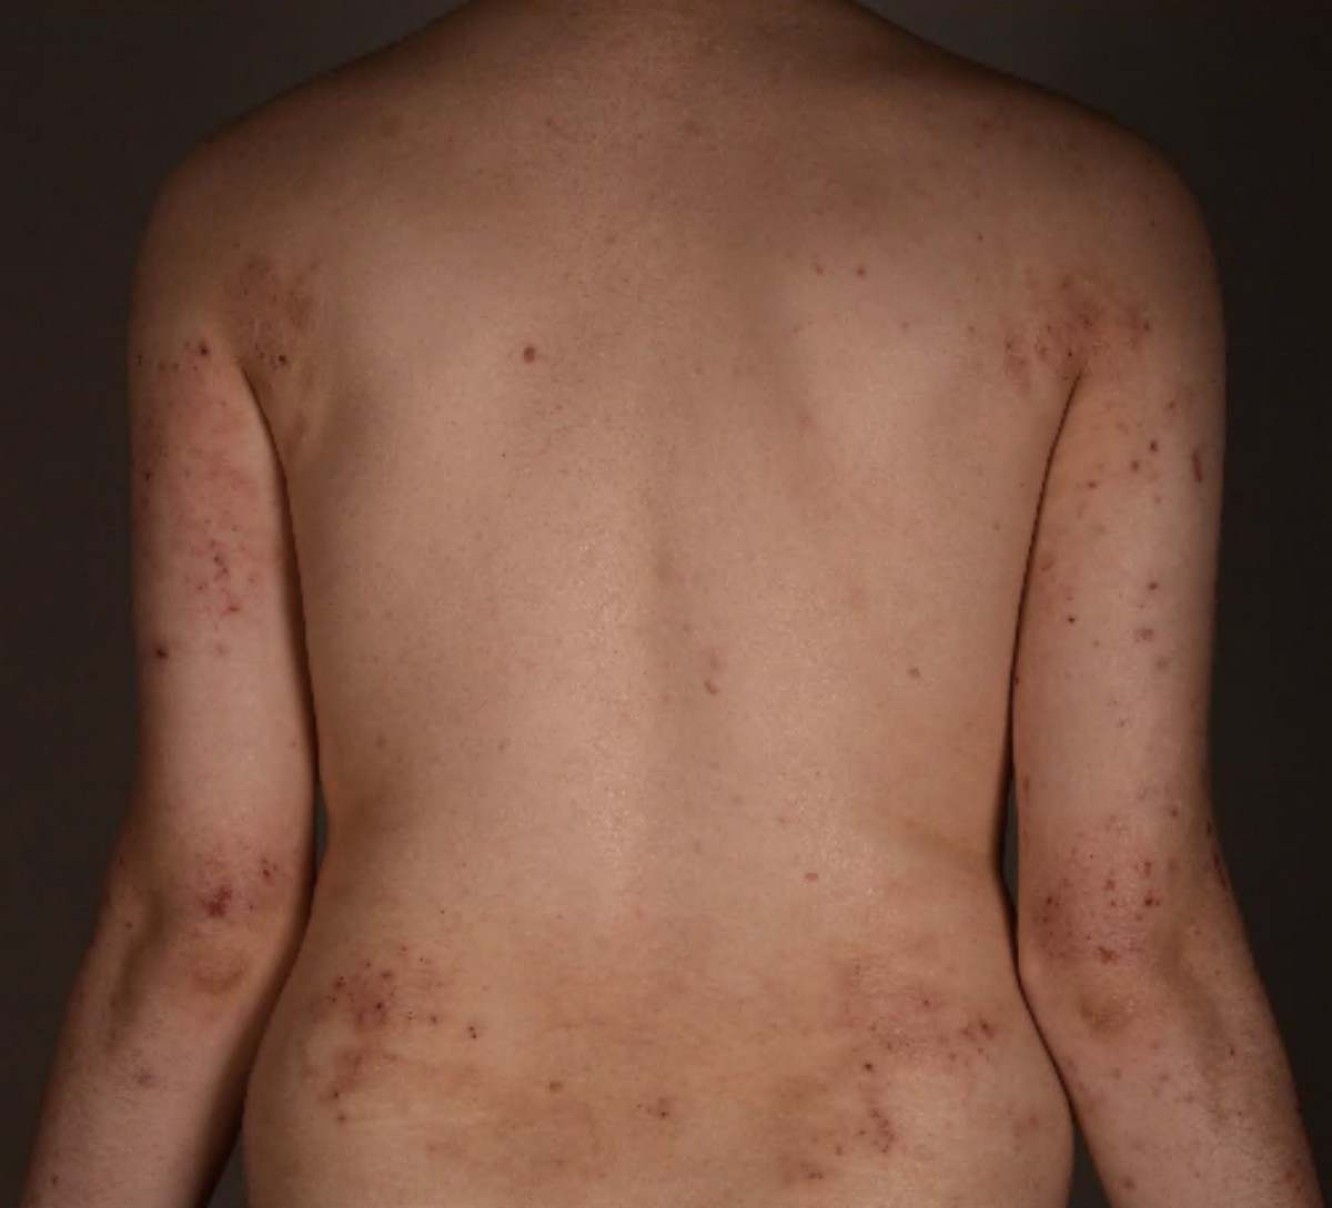 Artigo: Dermatite atópica e seus impactos além da pele